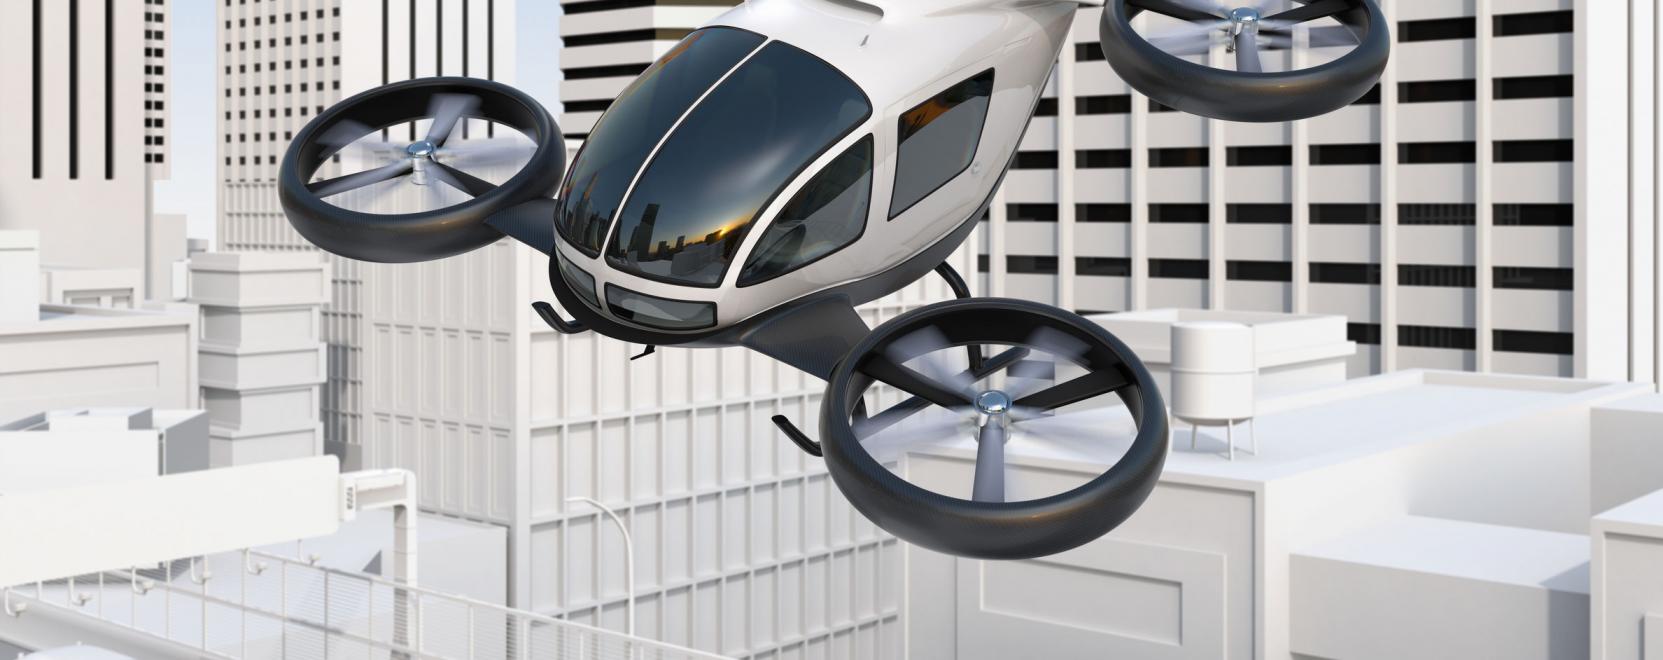 A drónok forradalmasíthatják a városi közlekedést